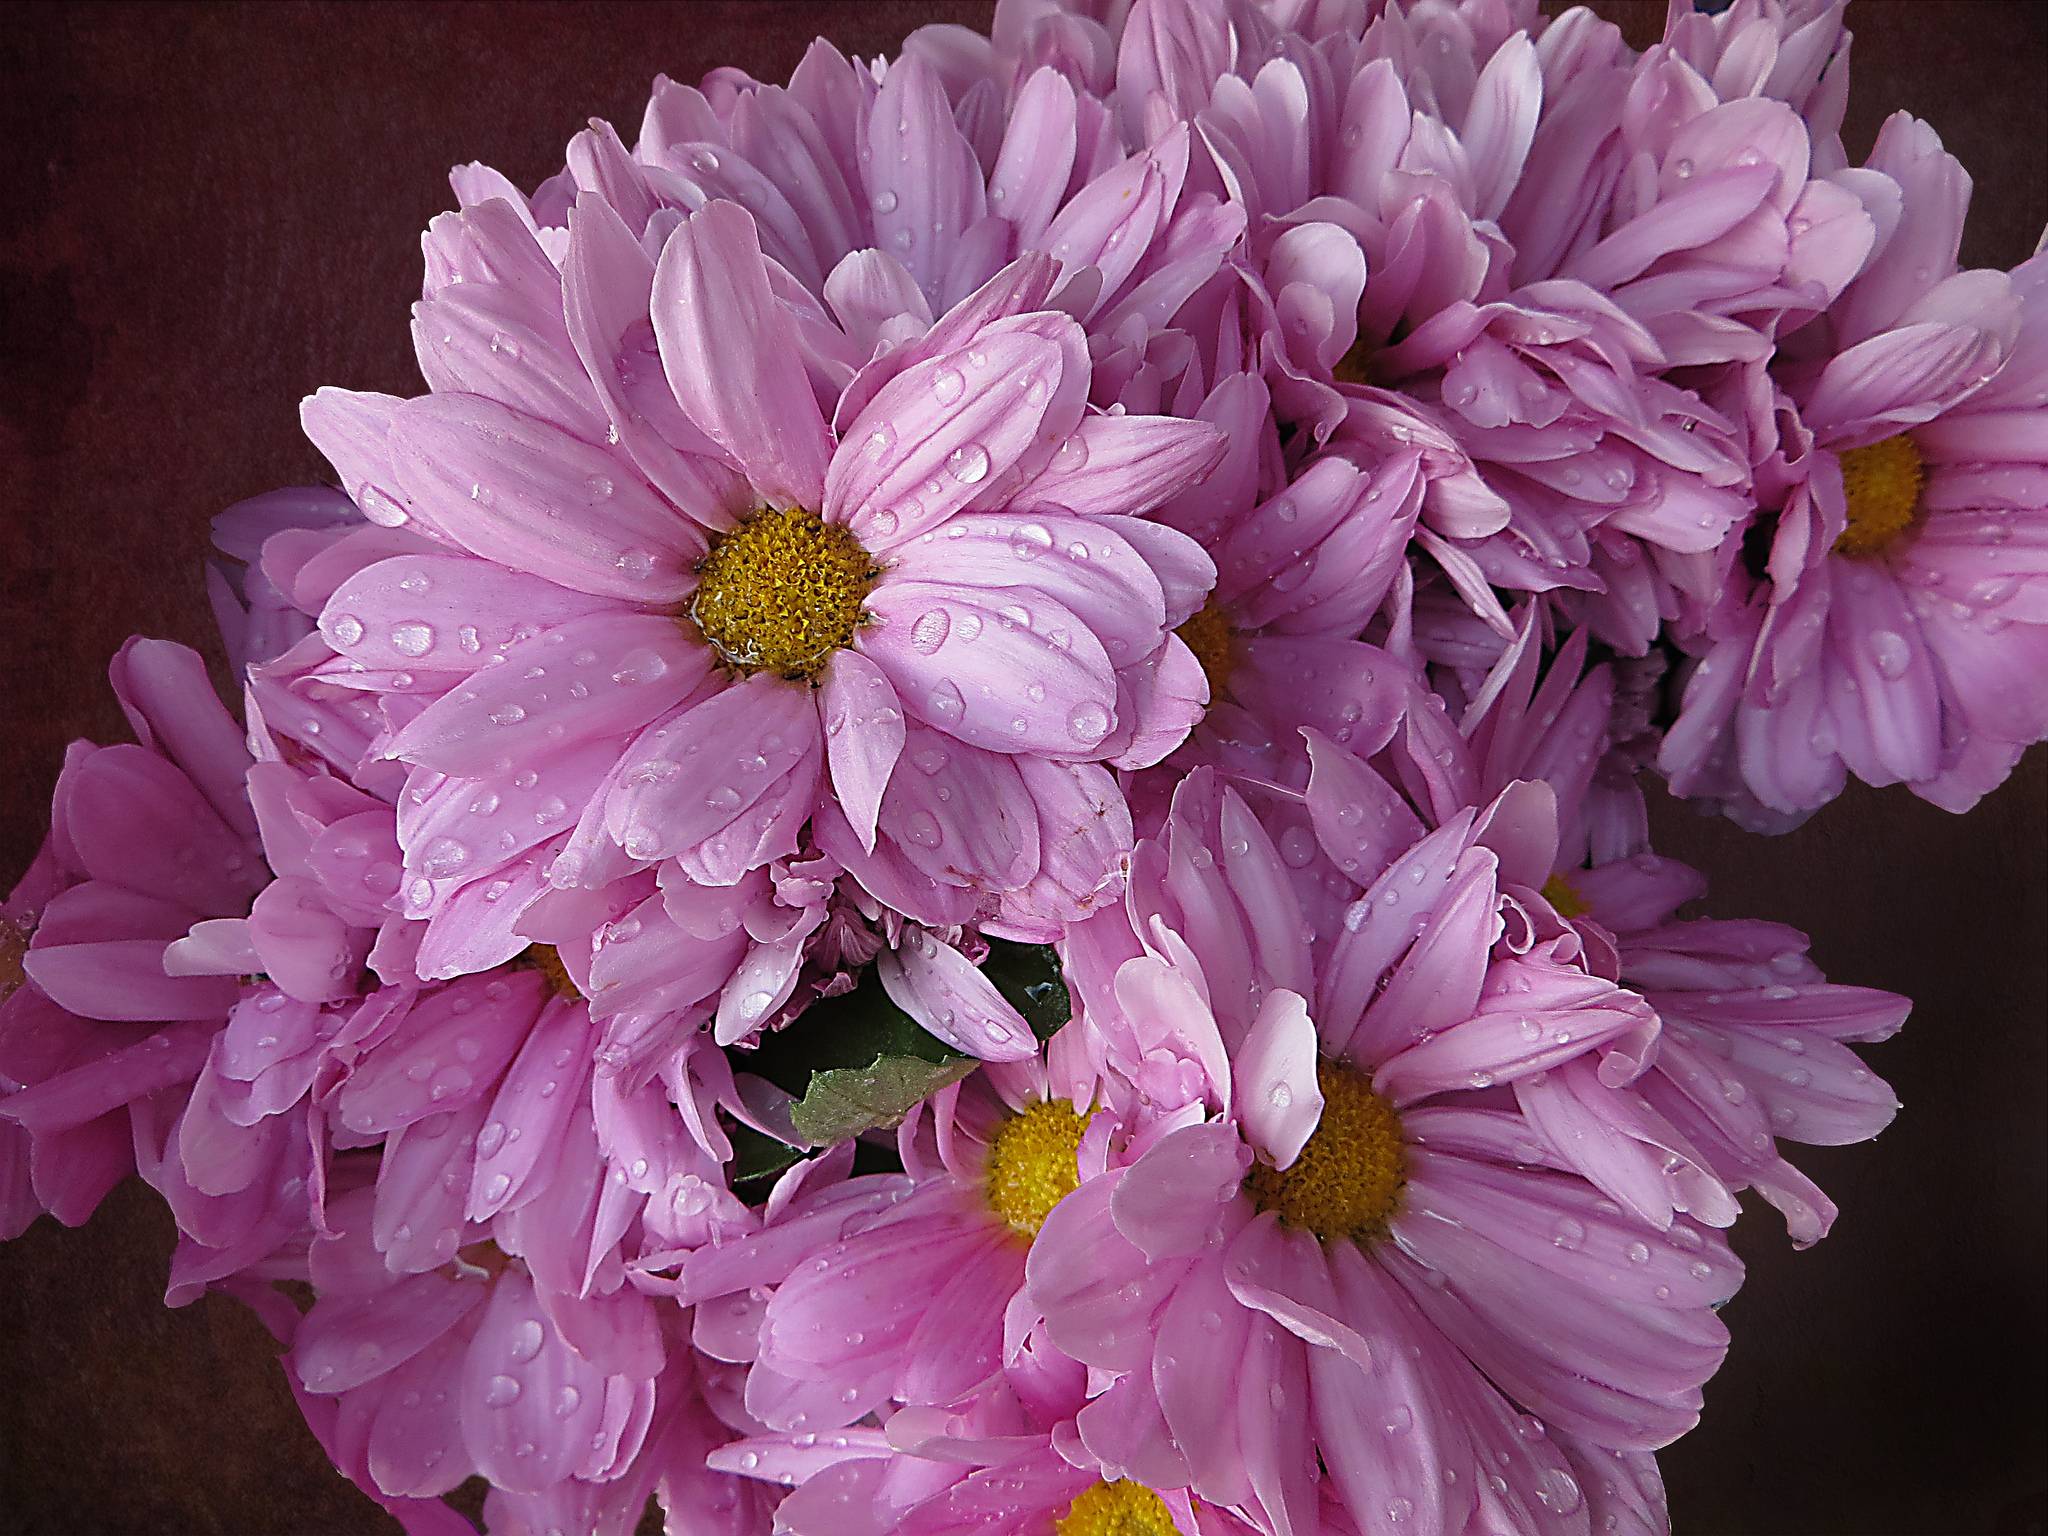 Фото цветы хризантемы капли - бесплатные картинки на Fonwall